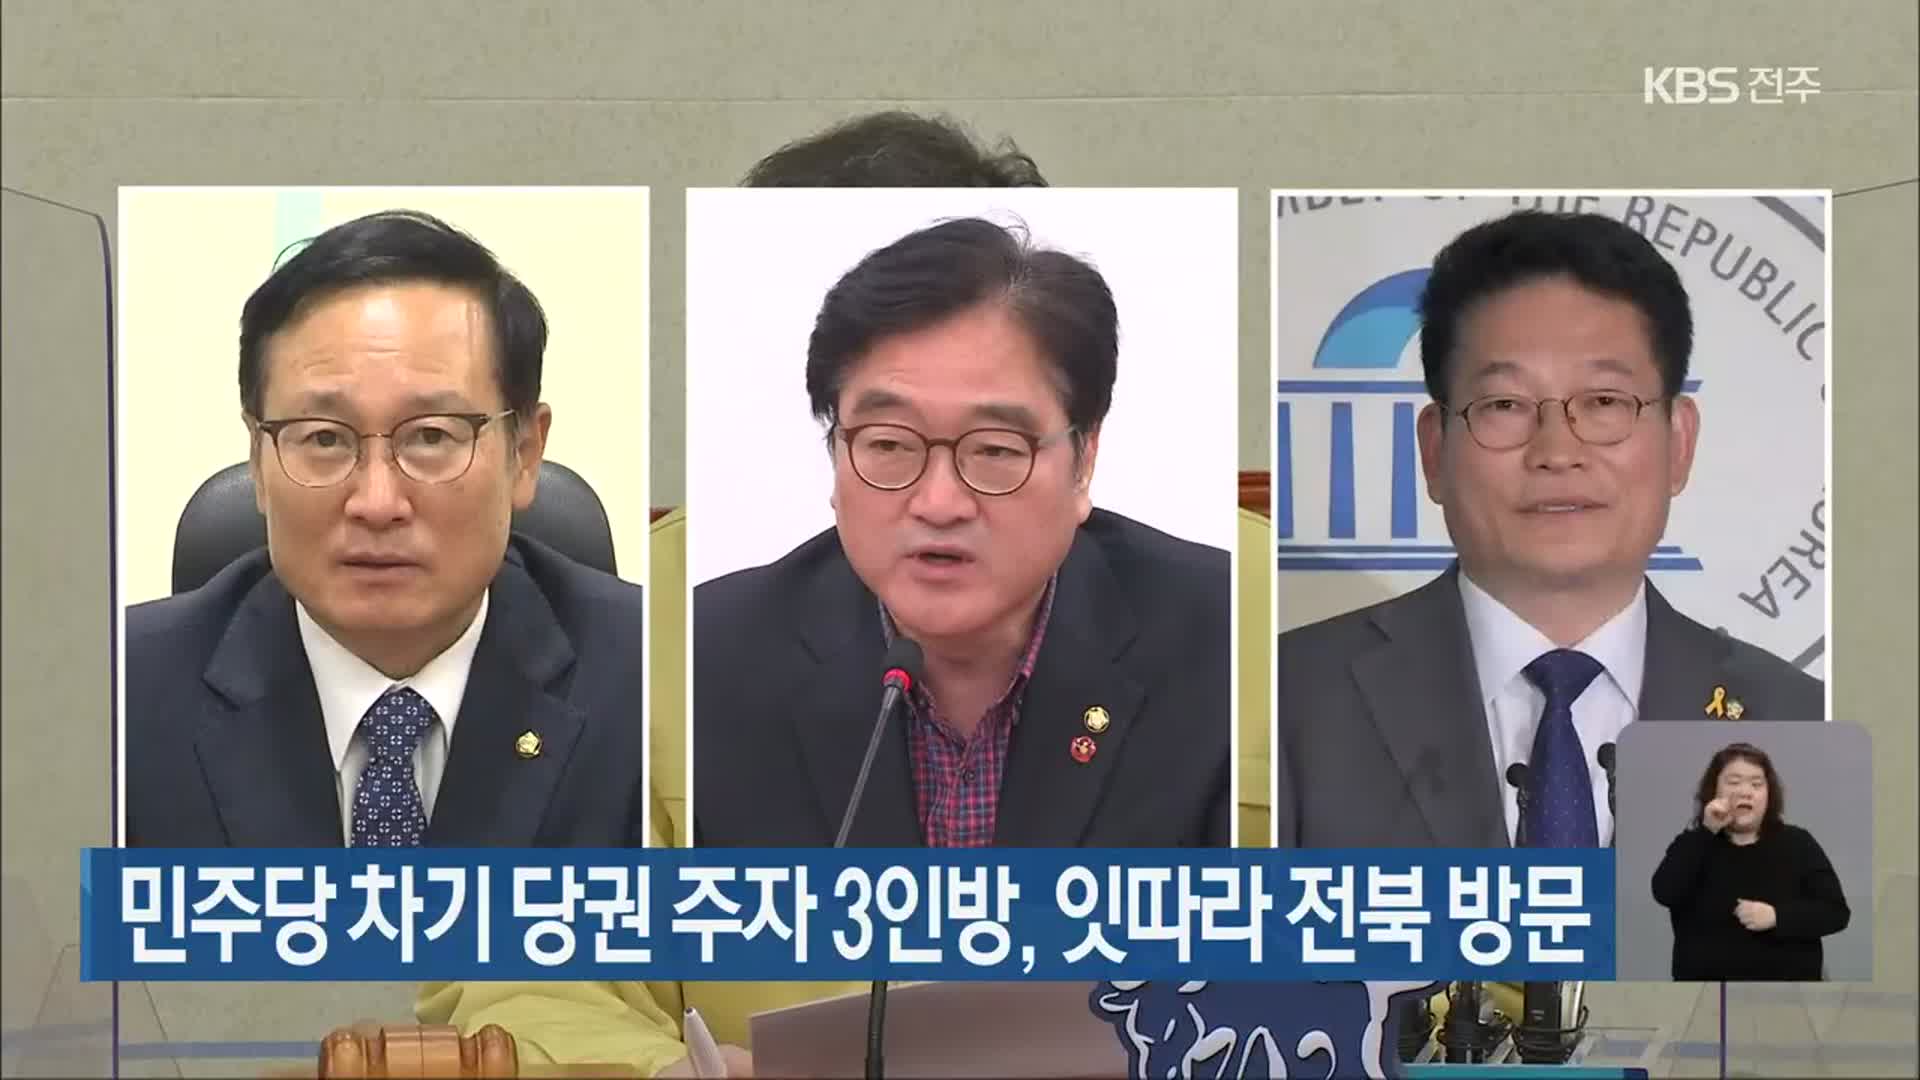 민주당 차기 당권 주자 3인방, 잇따라 전북 방문